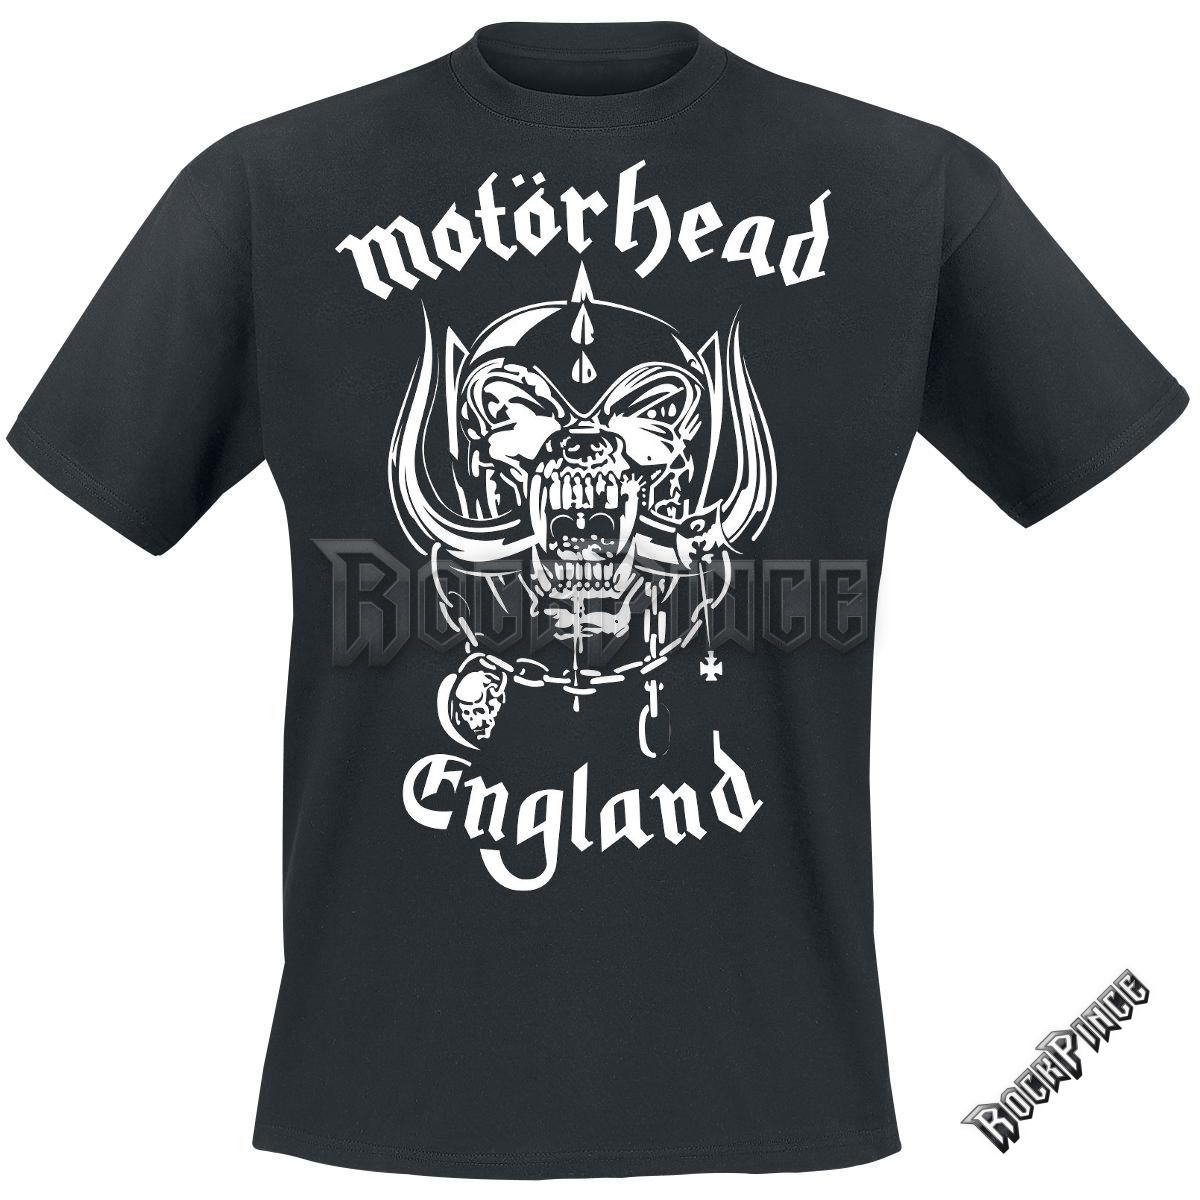 Motörhead - England - UNISEX PÓLÓ